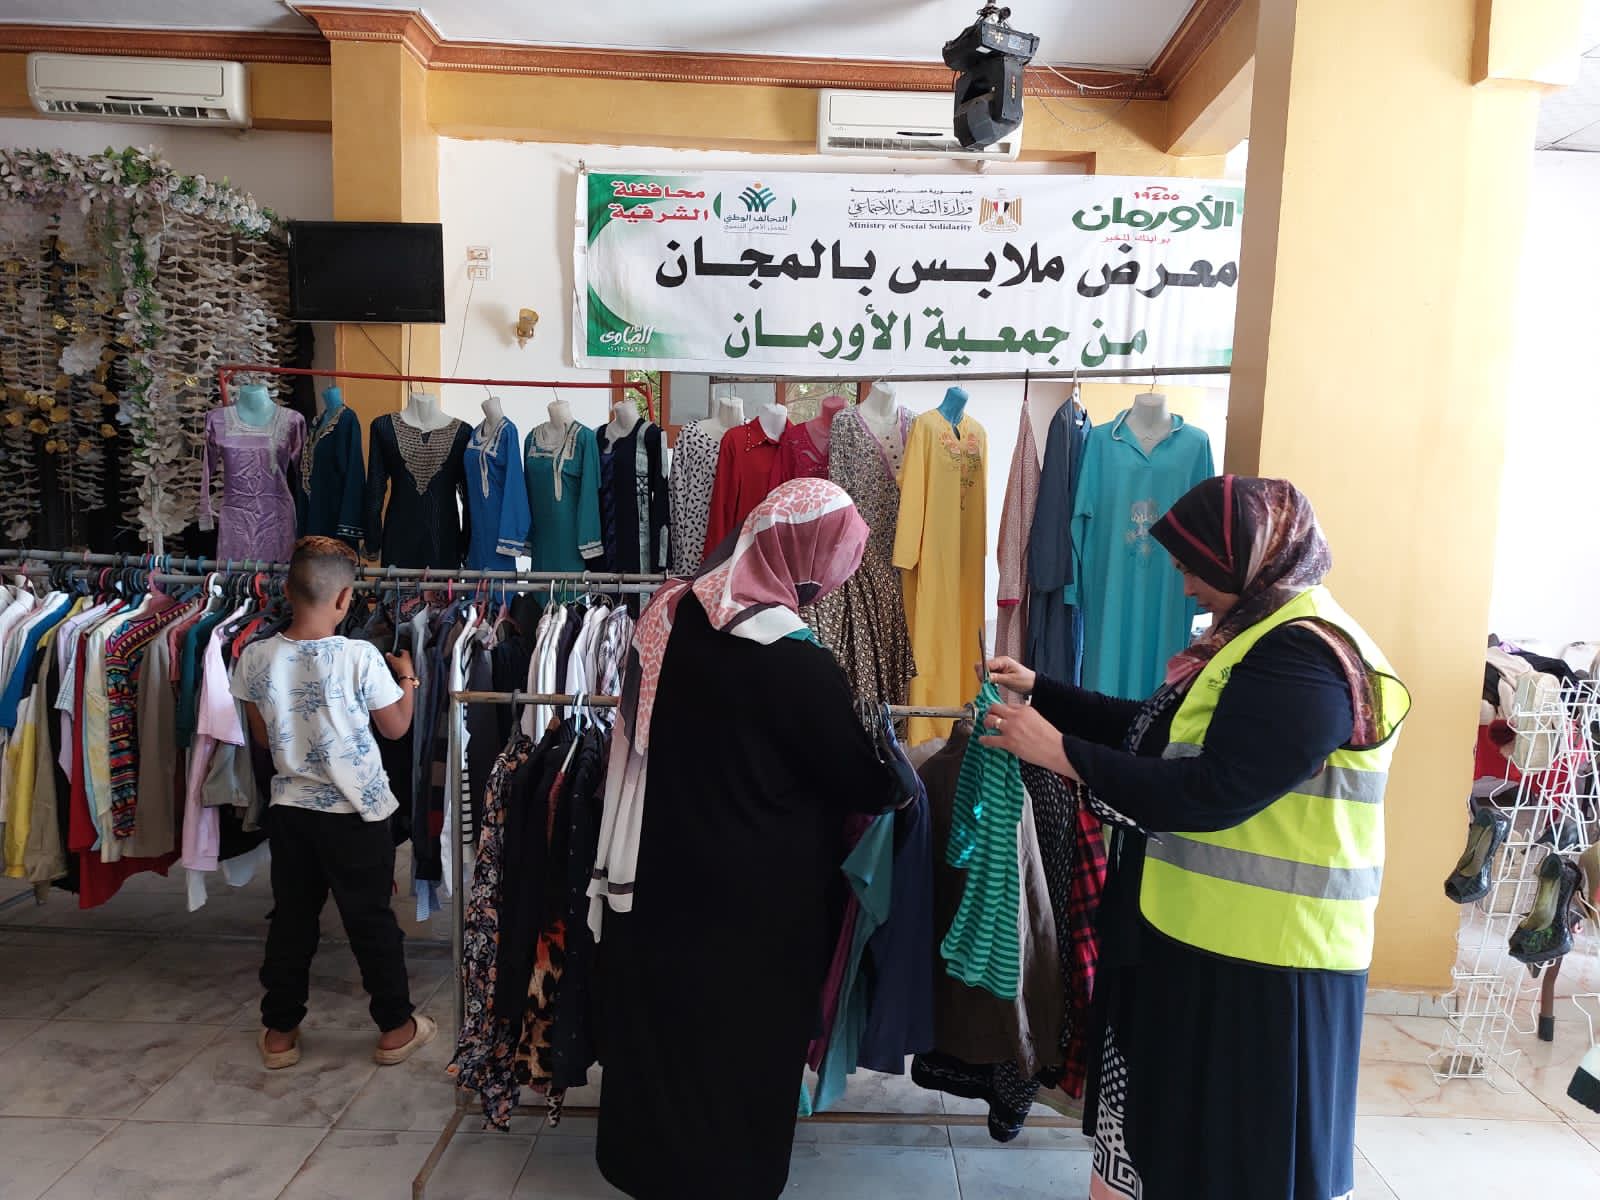 معرض ملابس جديد بالمجان لدعم 300 مستفيد بالشرقية (1)